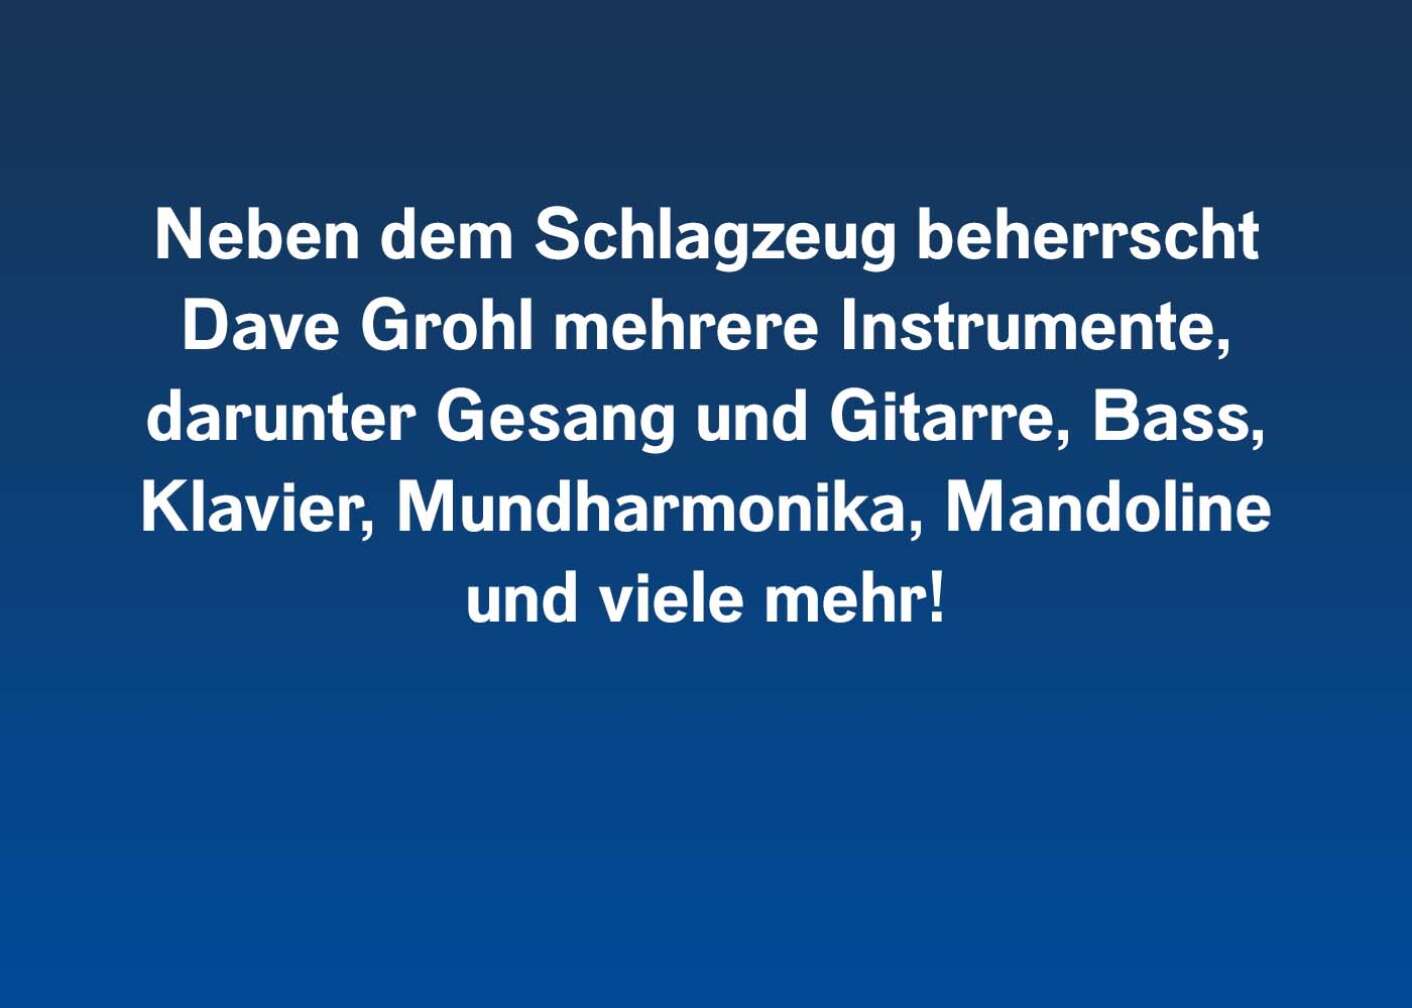 Neben dem Schlagzeug beherrscht Dave Grohl mehrere Instrumente, darunter Gesang und Gitarre, Bass, Klavier, Mundharmonika, Mandoline und viele mehr!